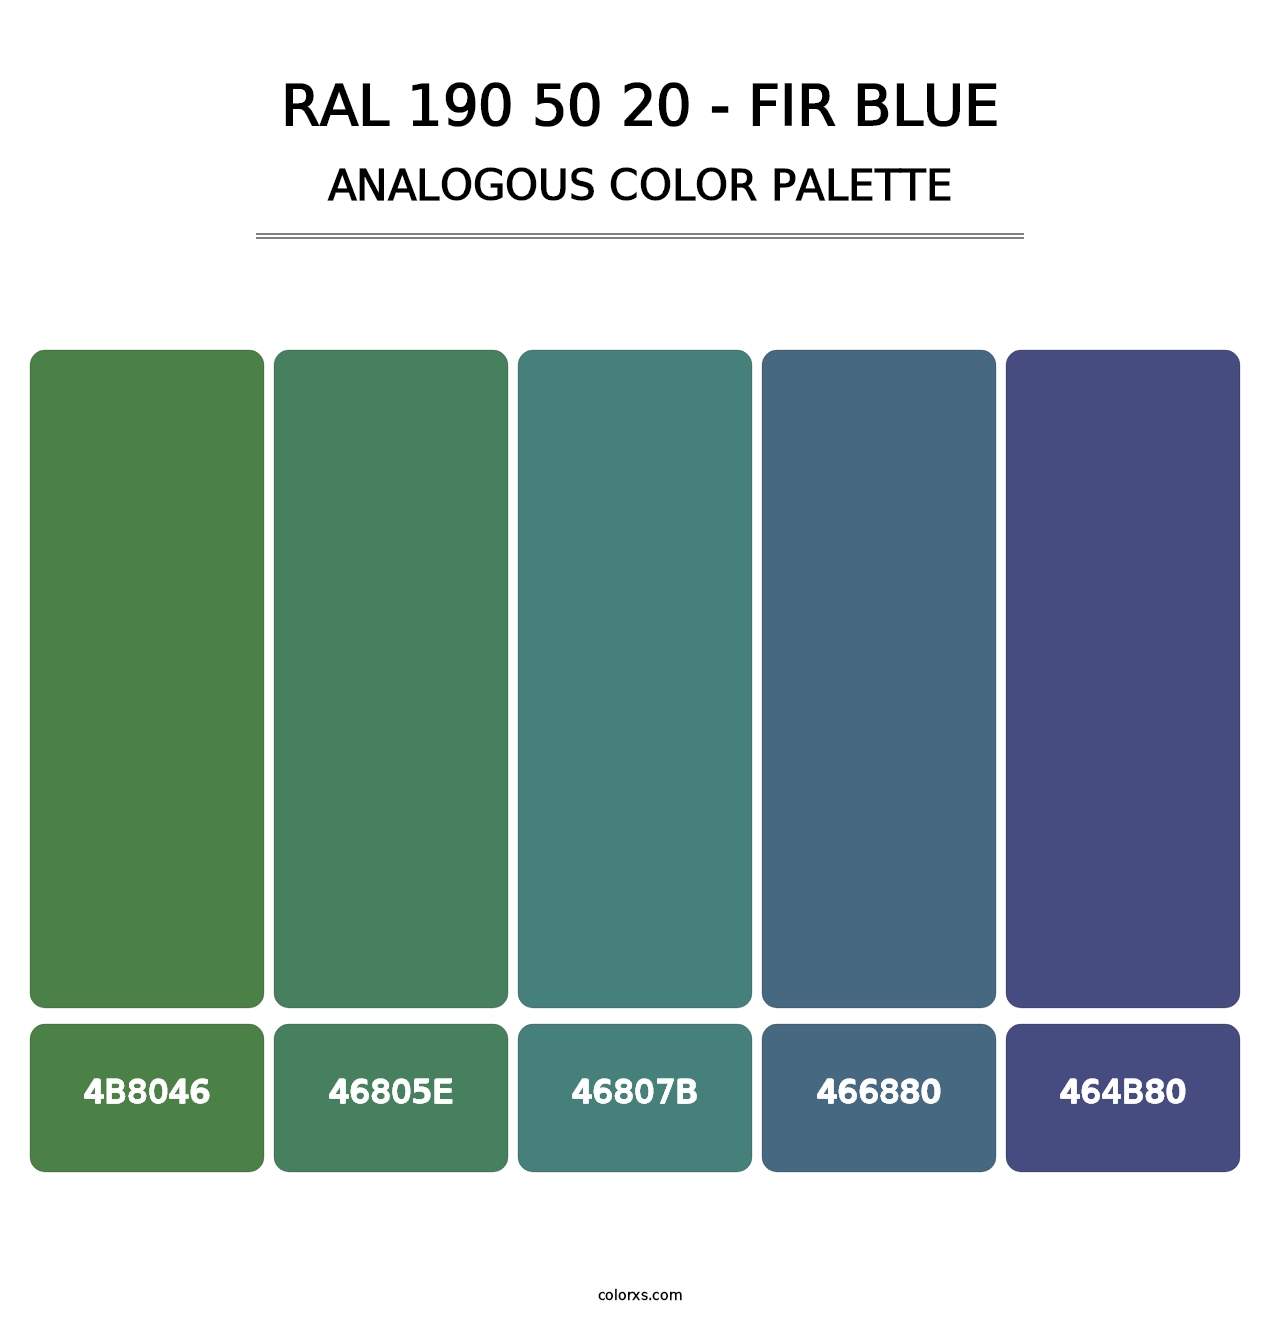 RAL 190 50 20 - Fir Blue - Analogous Color Palette